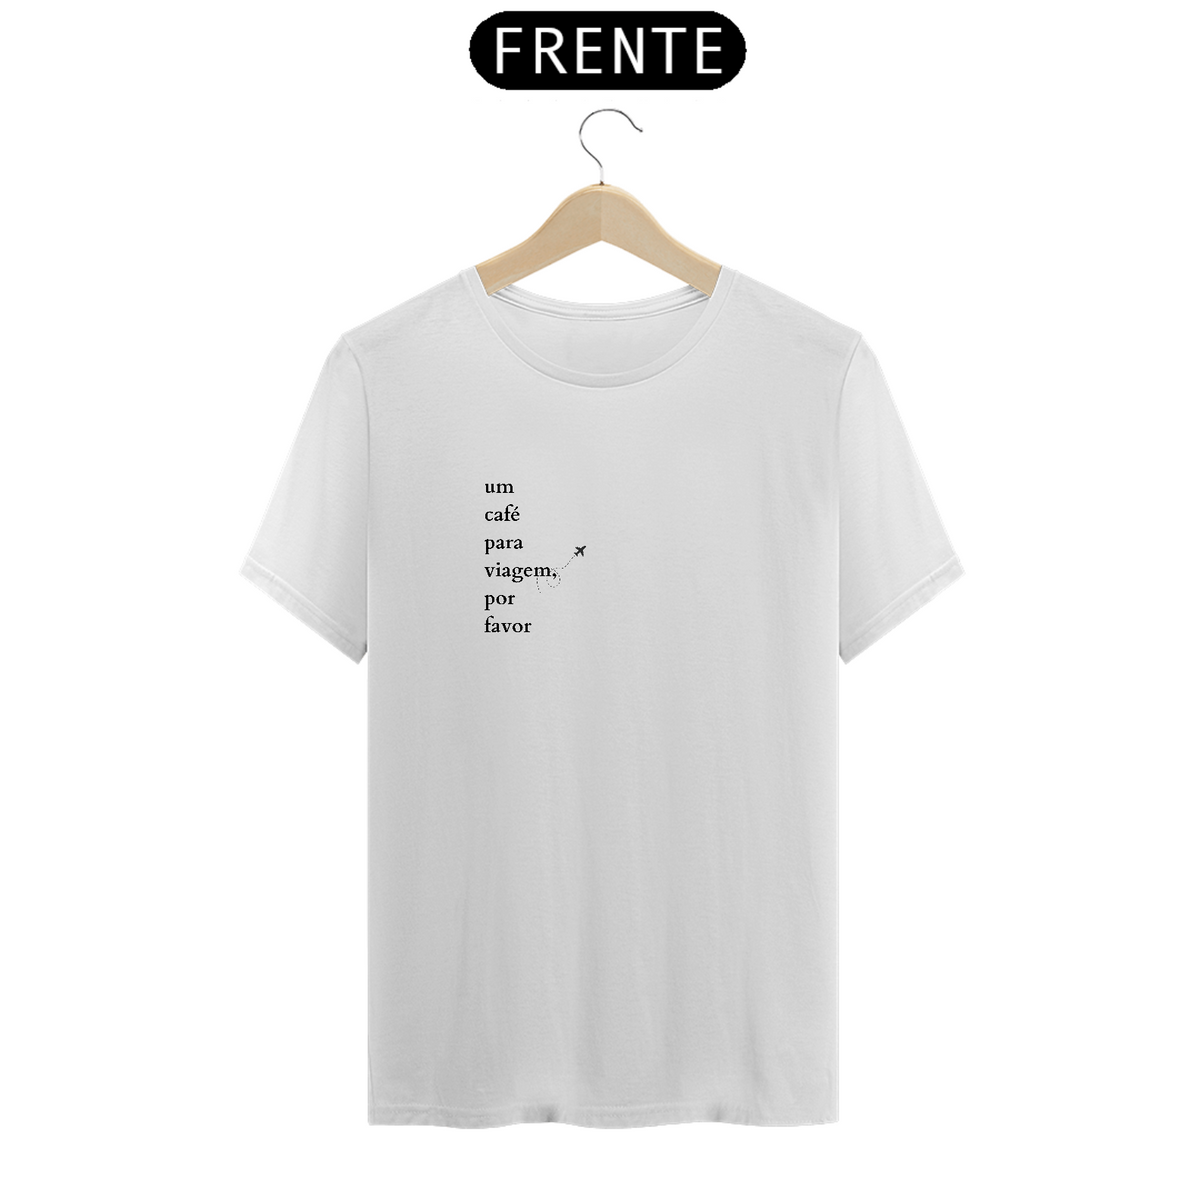 Nome do produto: Camiseta Prime Cafe preto